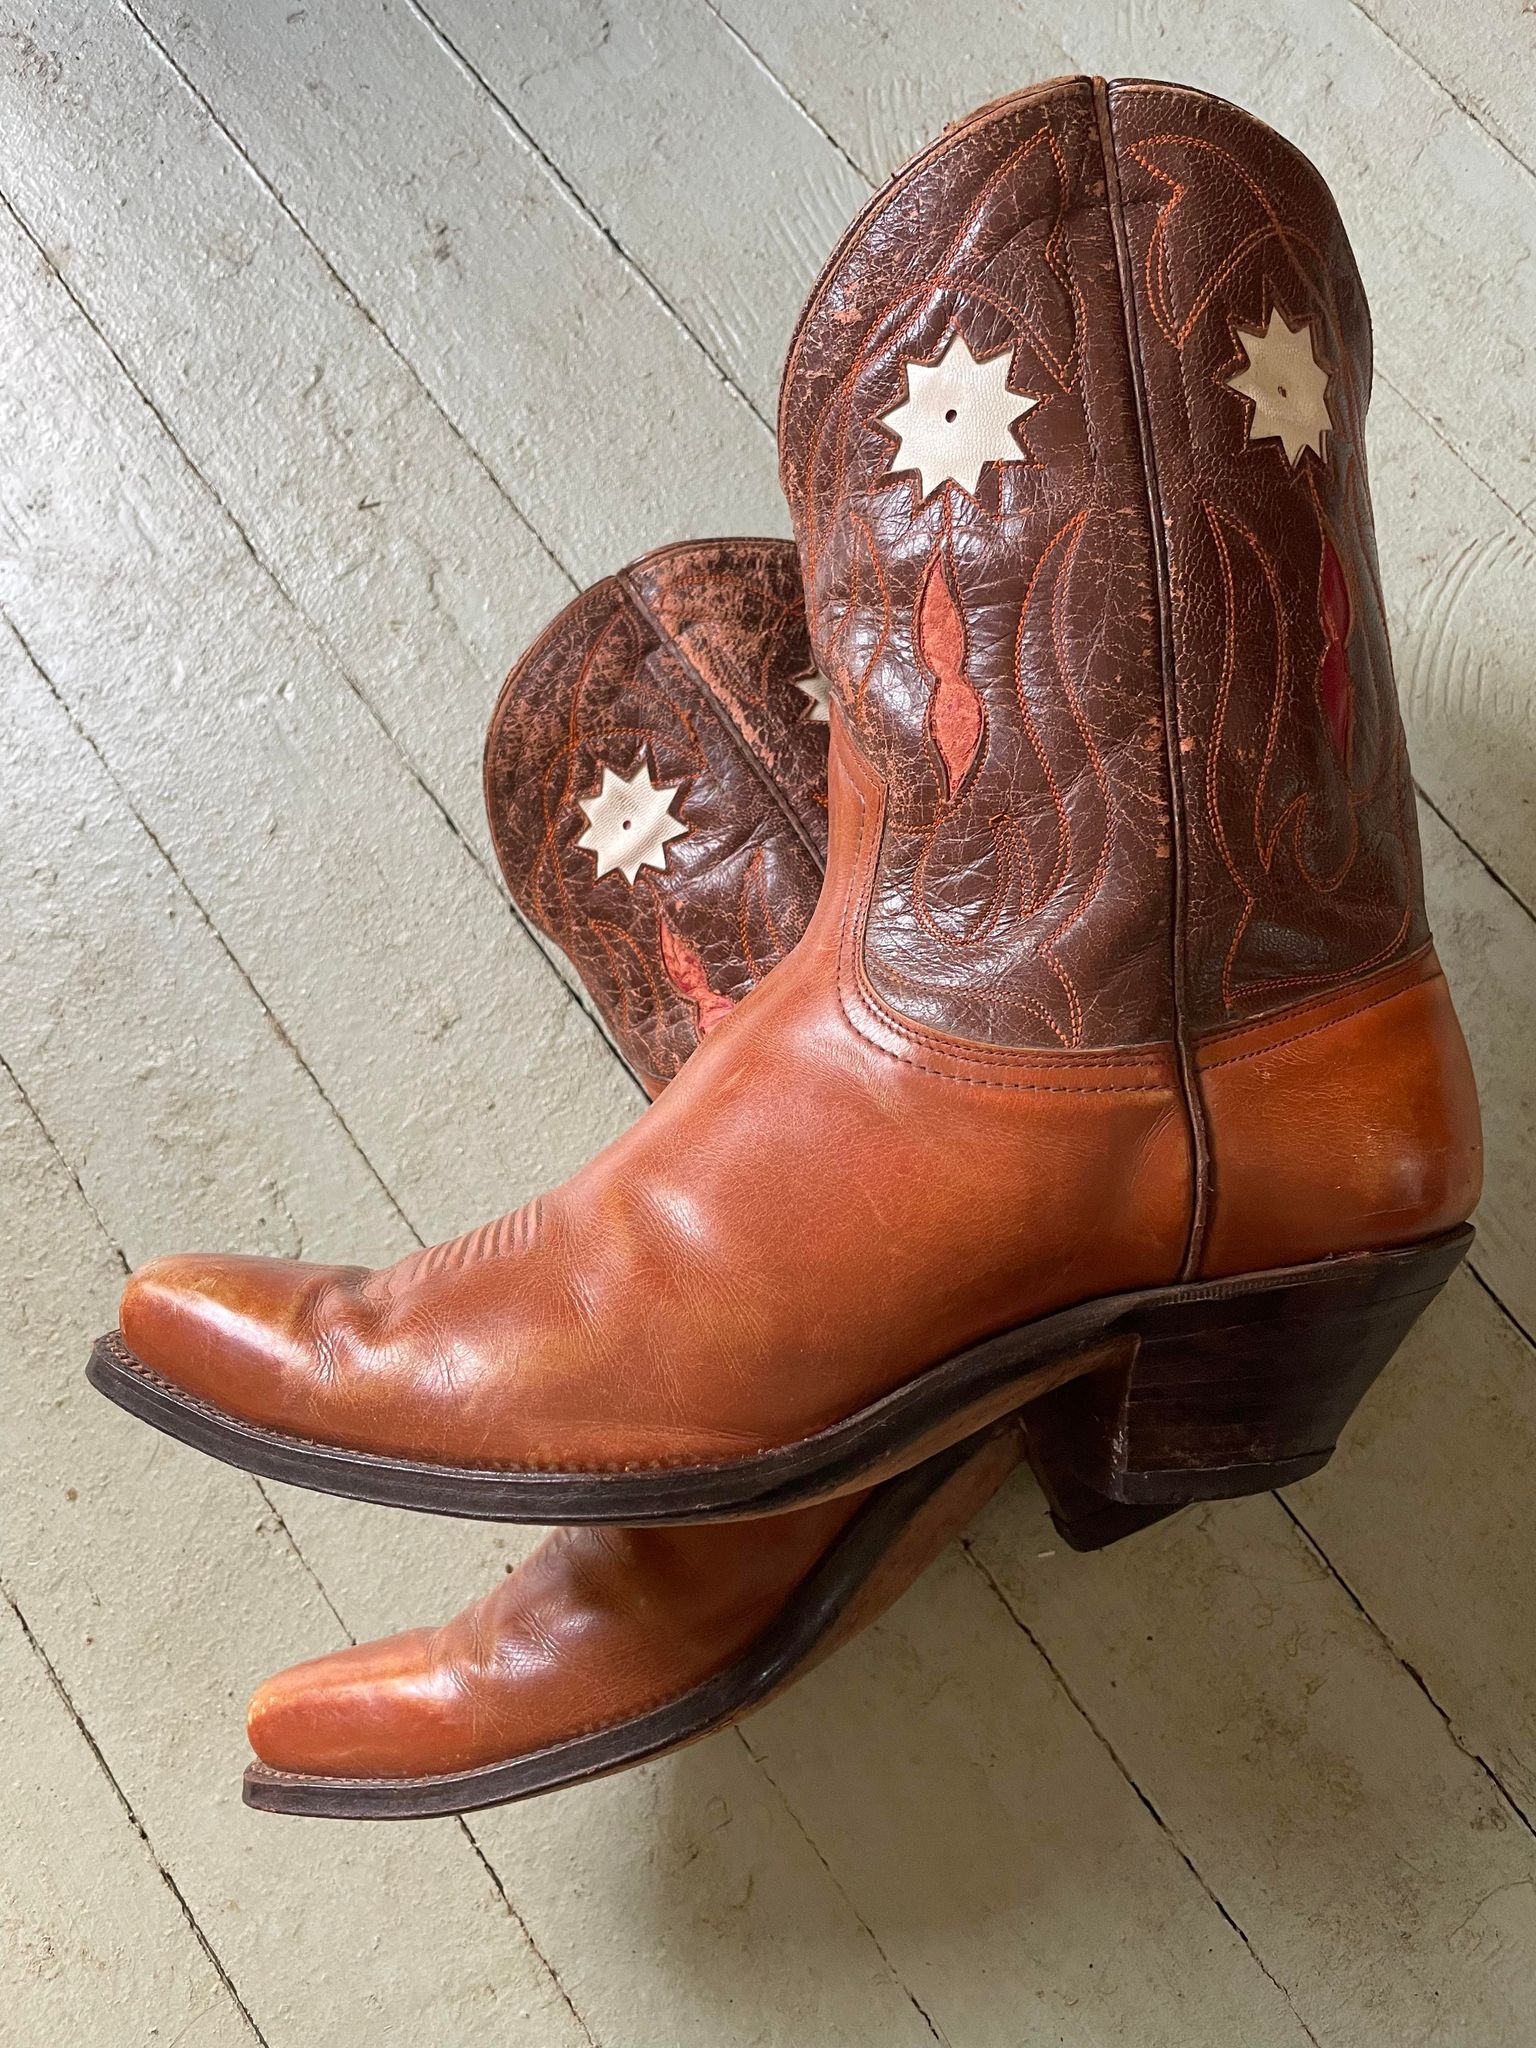 Vintage Cowboy Boots (Men's 9.5 D)